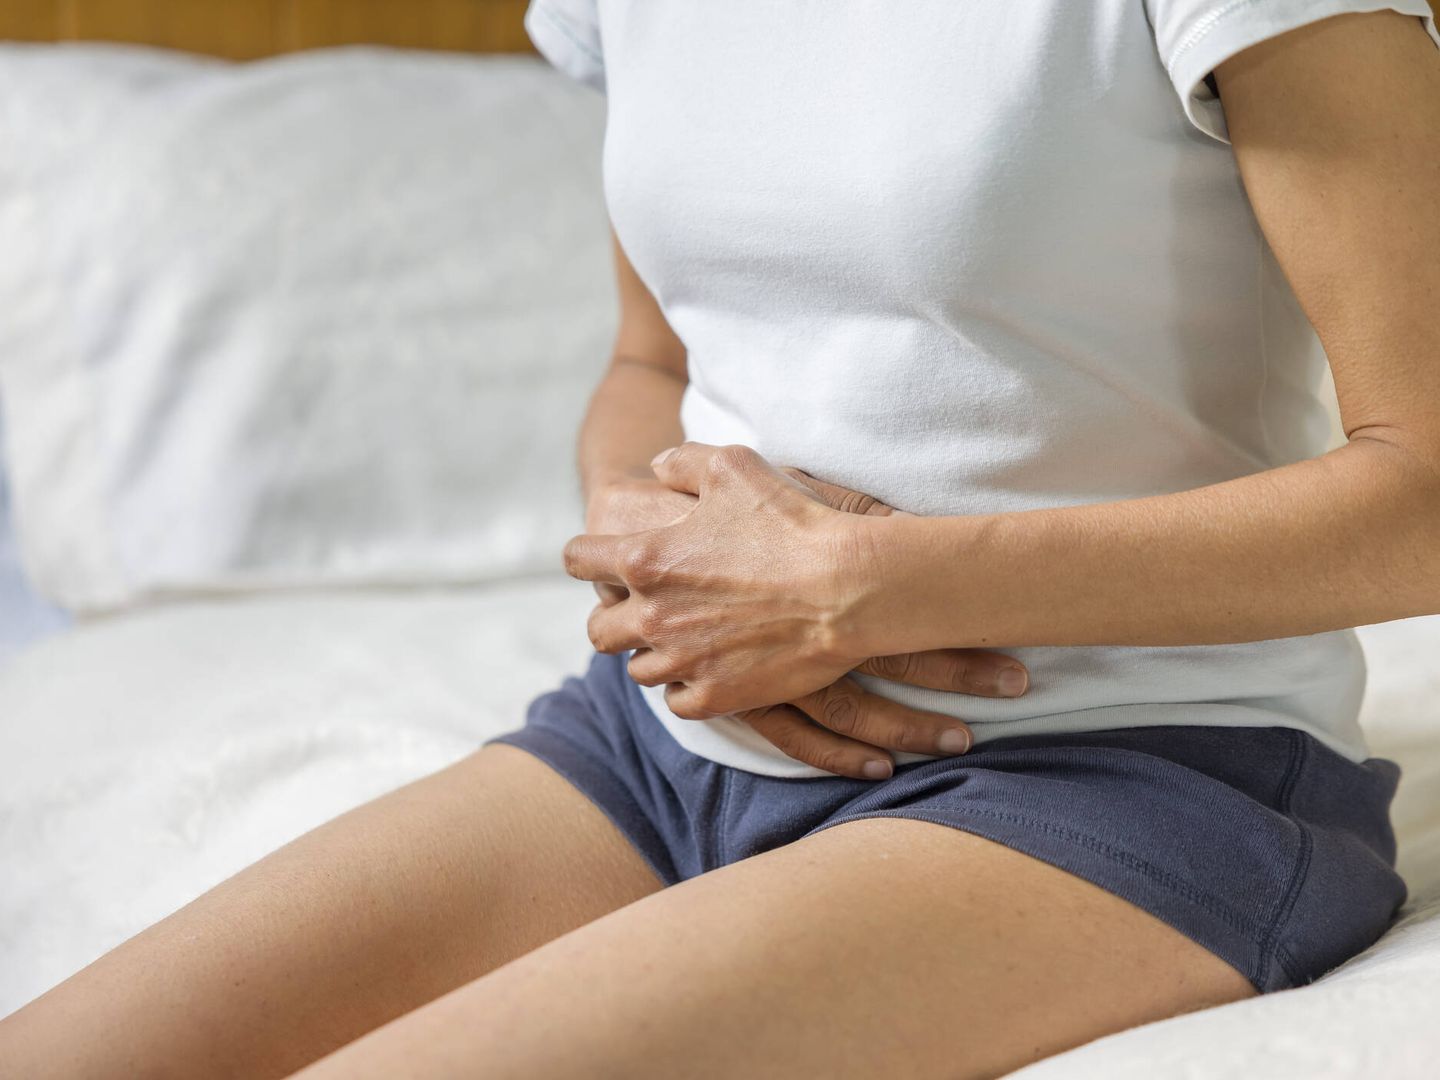 El déficit de enzimas digestivas puede producir malestar gastrointestinal. (iStock)